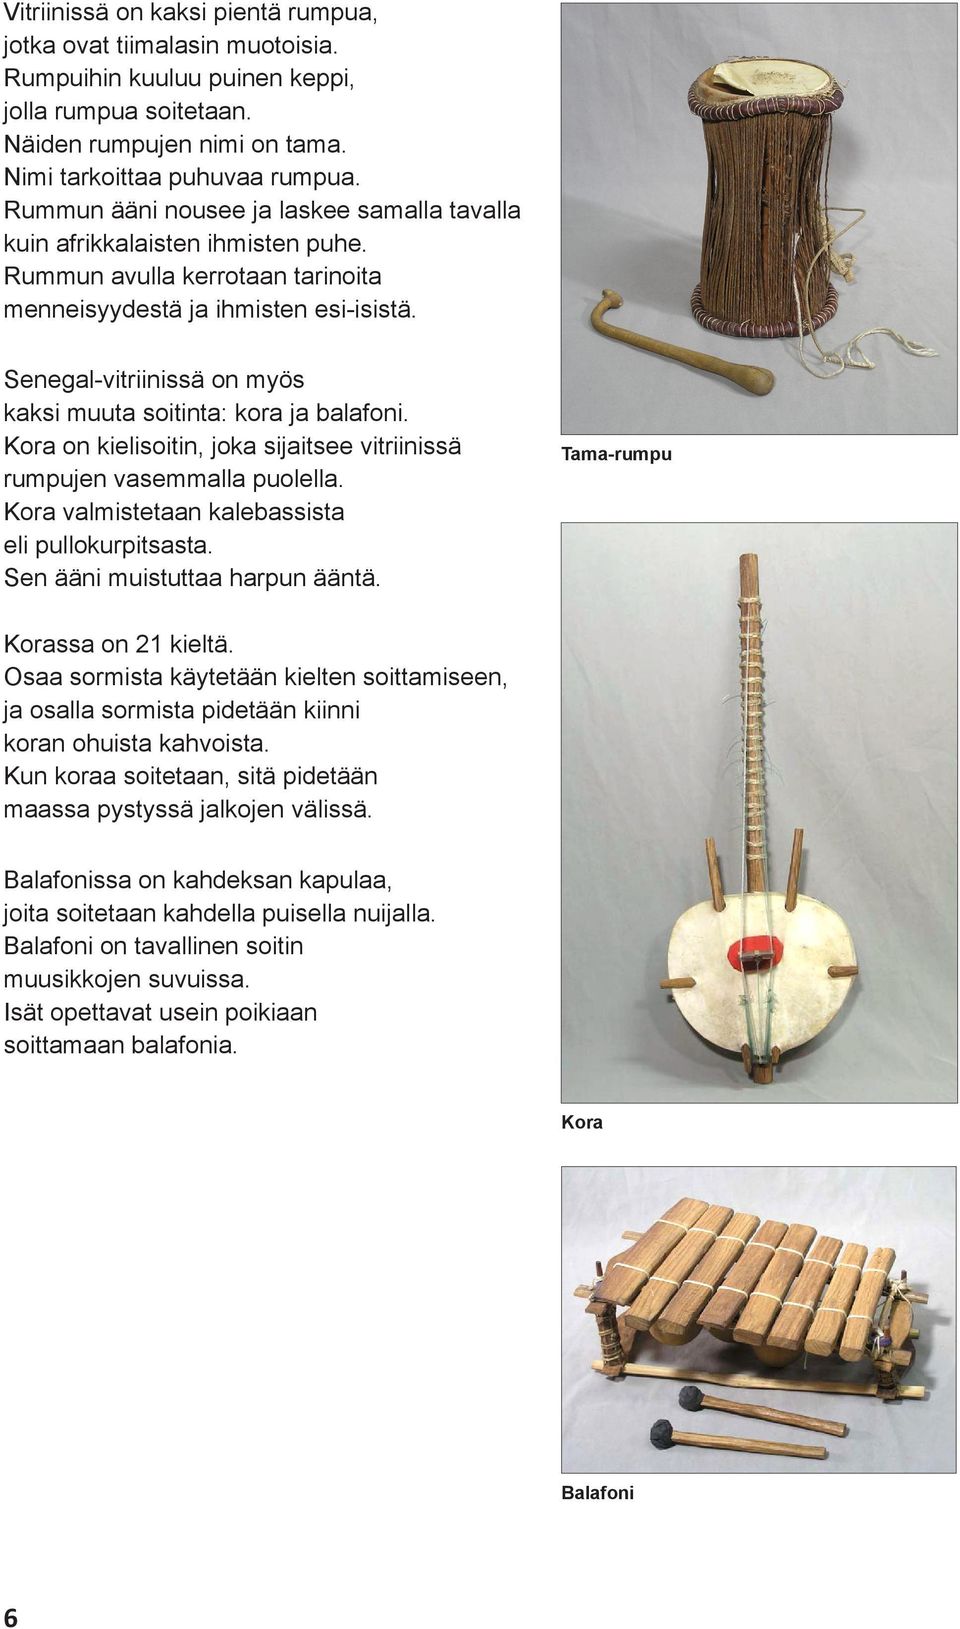 Senegal-vitriinissä on myös kaksi muuta soitinta: kora ja balafoni. Kora on kielisoitin, joka sijaitsee vitriinissä rumpujen vasemmalla puolella. Kora valmistetaan kalebassista eli pullokurpitsasta.